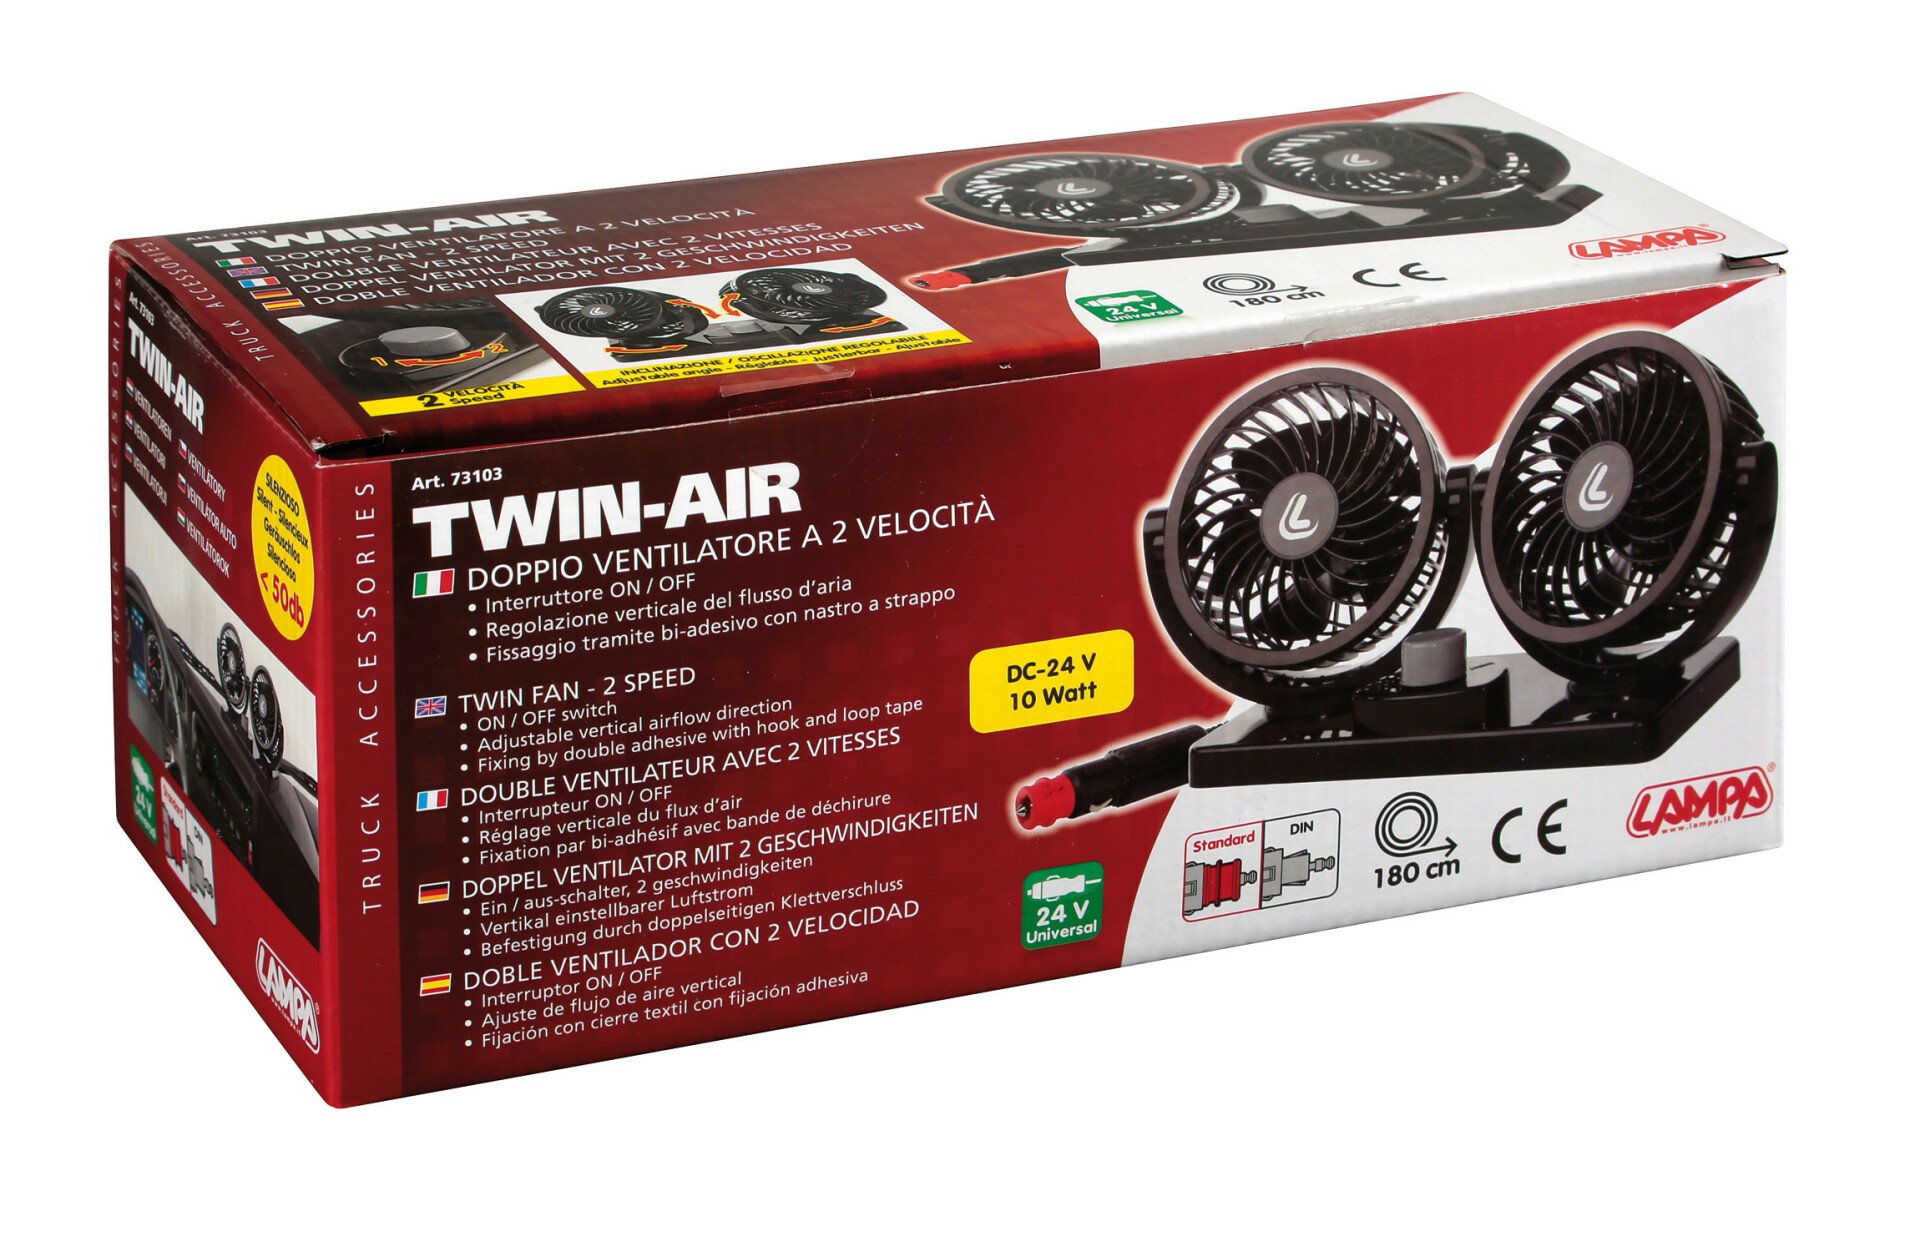 Twin-Air, twin fan, 2 speed, Ø 4” - 24V thumb